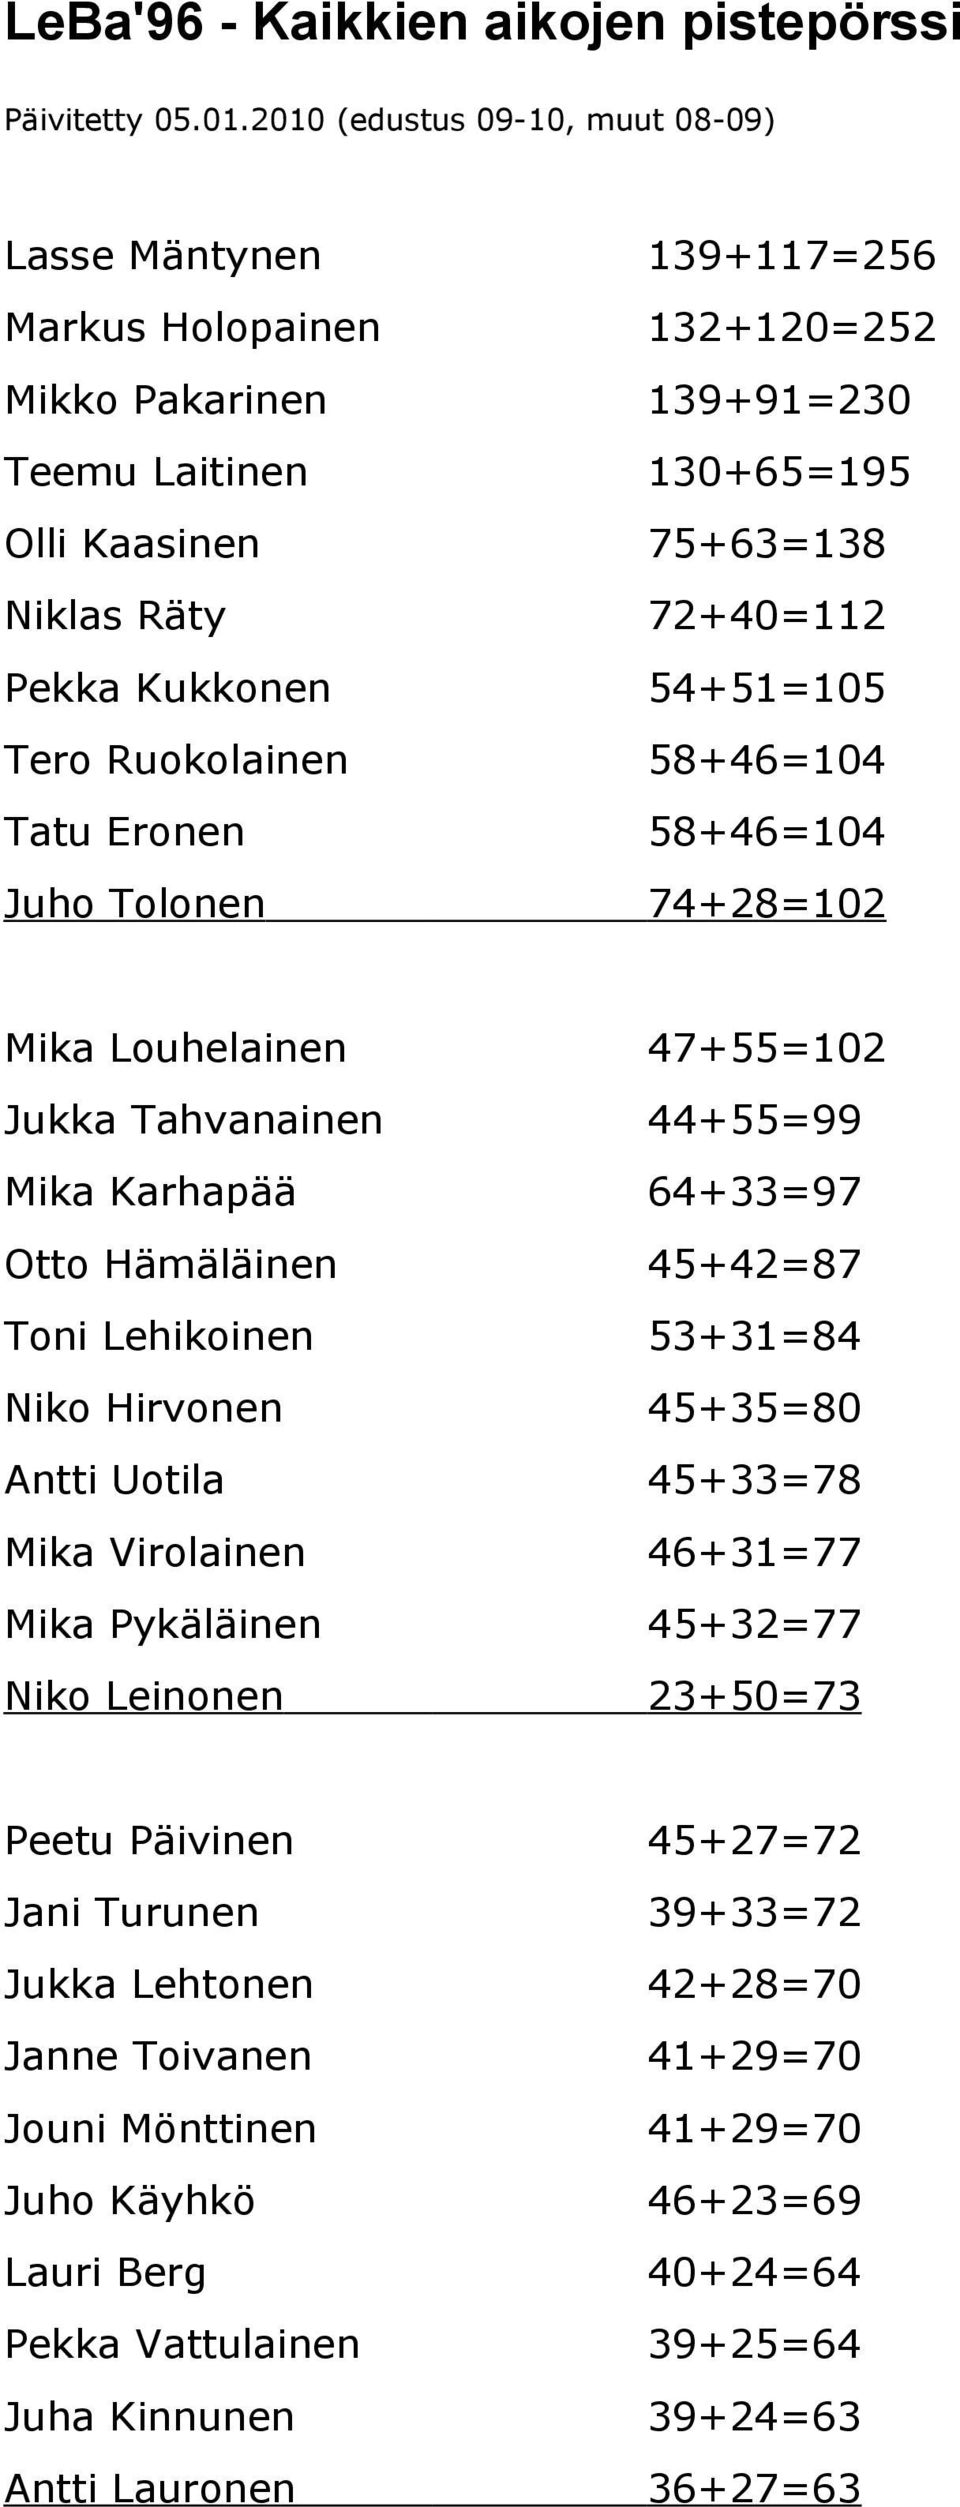 Kukkonen 54+51=105 Tero Ruokolainen 58+46=104 Tatu Eronen 58+46=104 Juho Tolonen 74+28=102 Mika Louhelainen 47+55=102 Jukka Tahvanainen 44+55=99 Mika Karhapää 64+33=97 Otto Hämäläinen 45+42=87 Toni